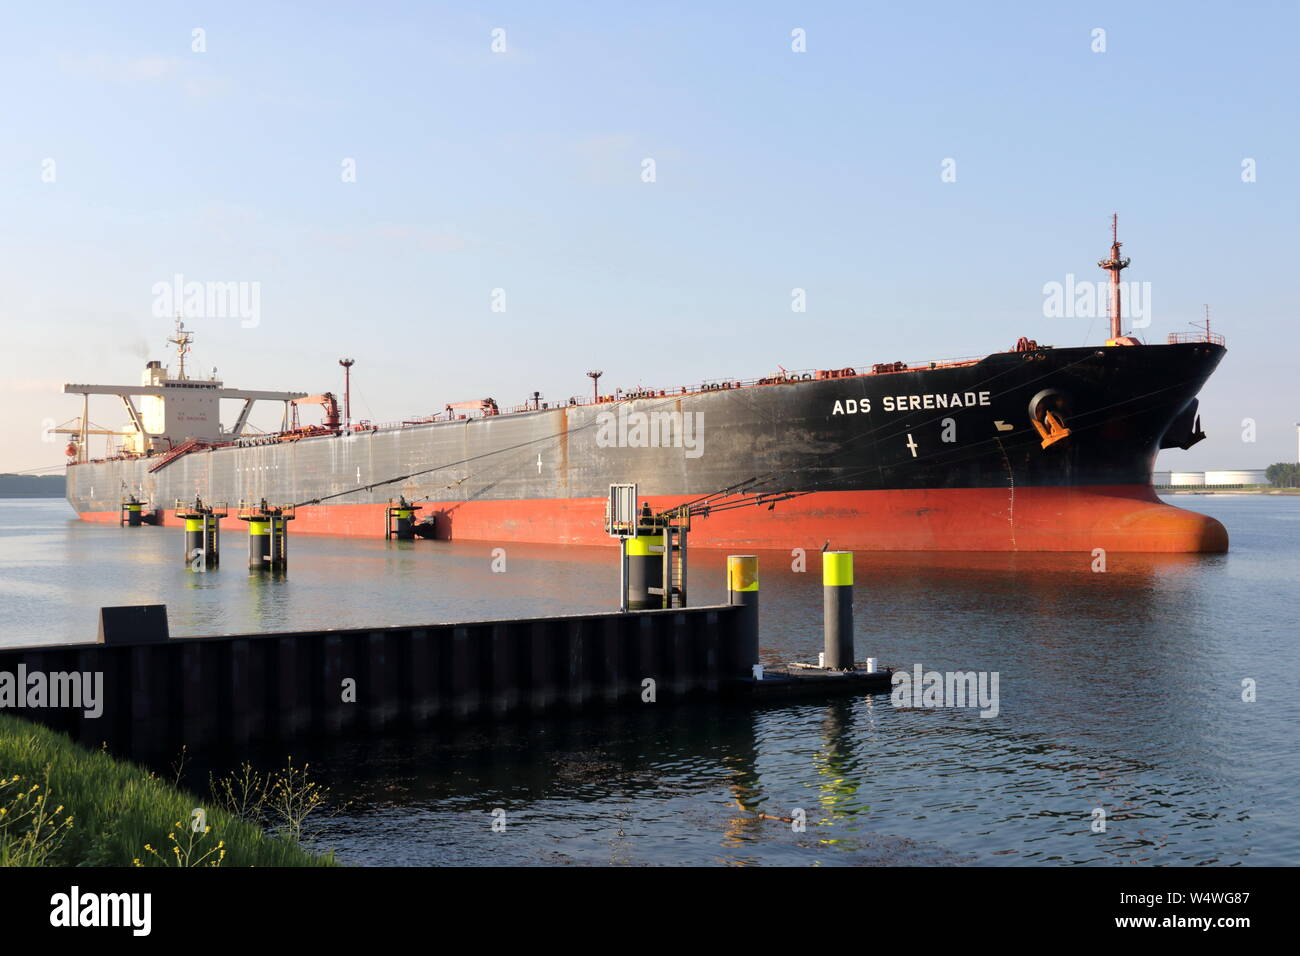 Der supertanker ADS Serenade ist am 22. Mai 2019 im Hafen von Rotterdam. Stockfoto